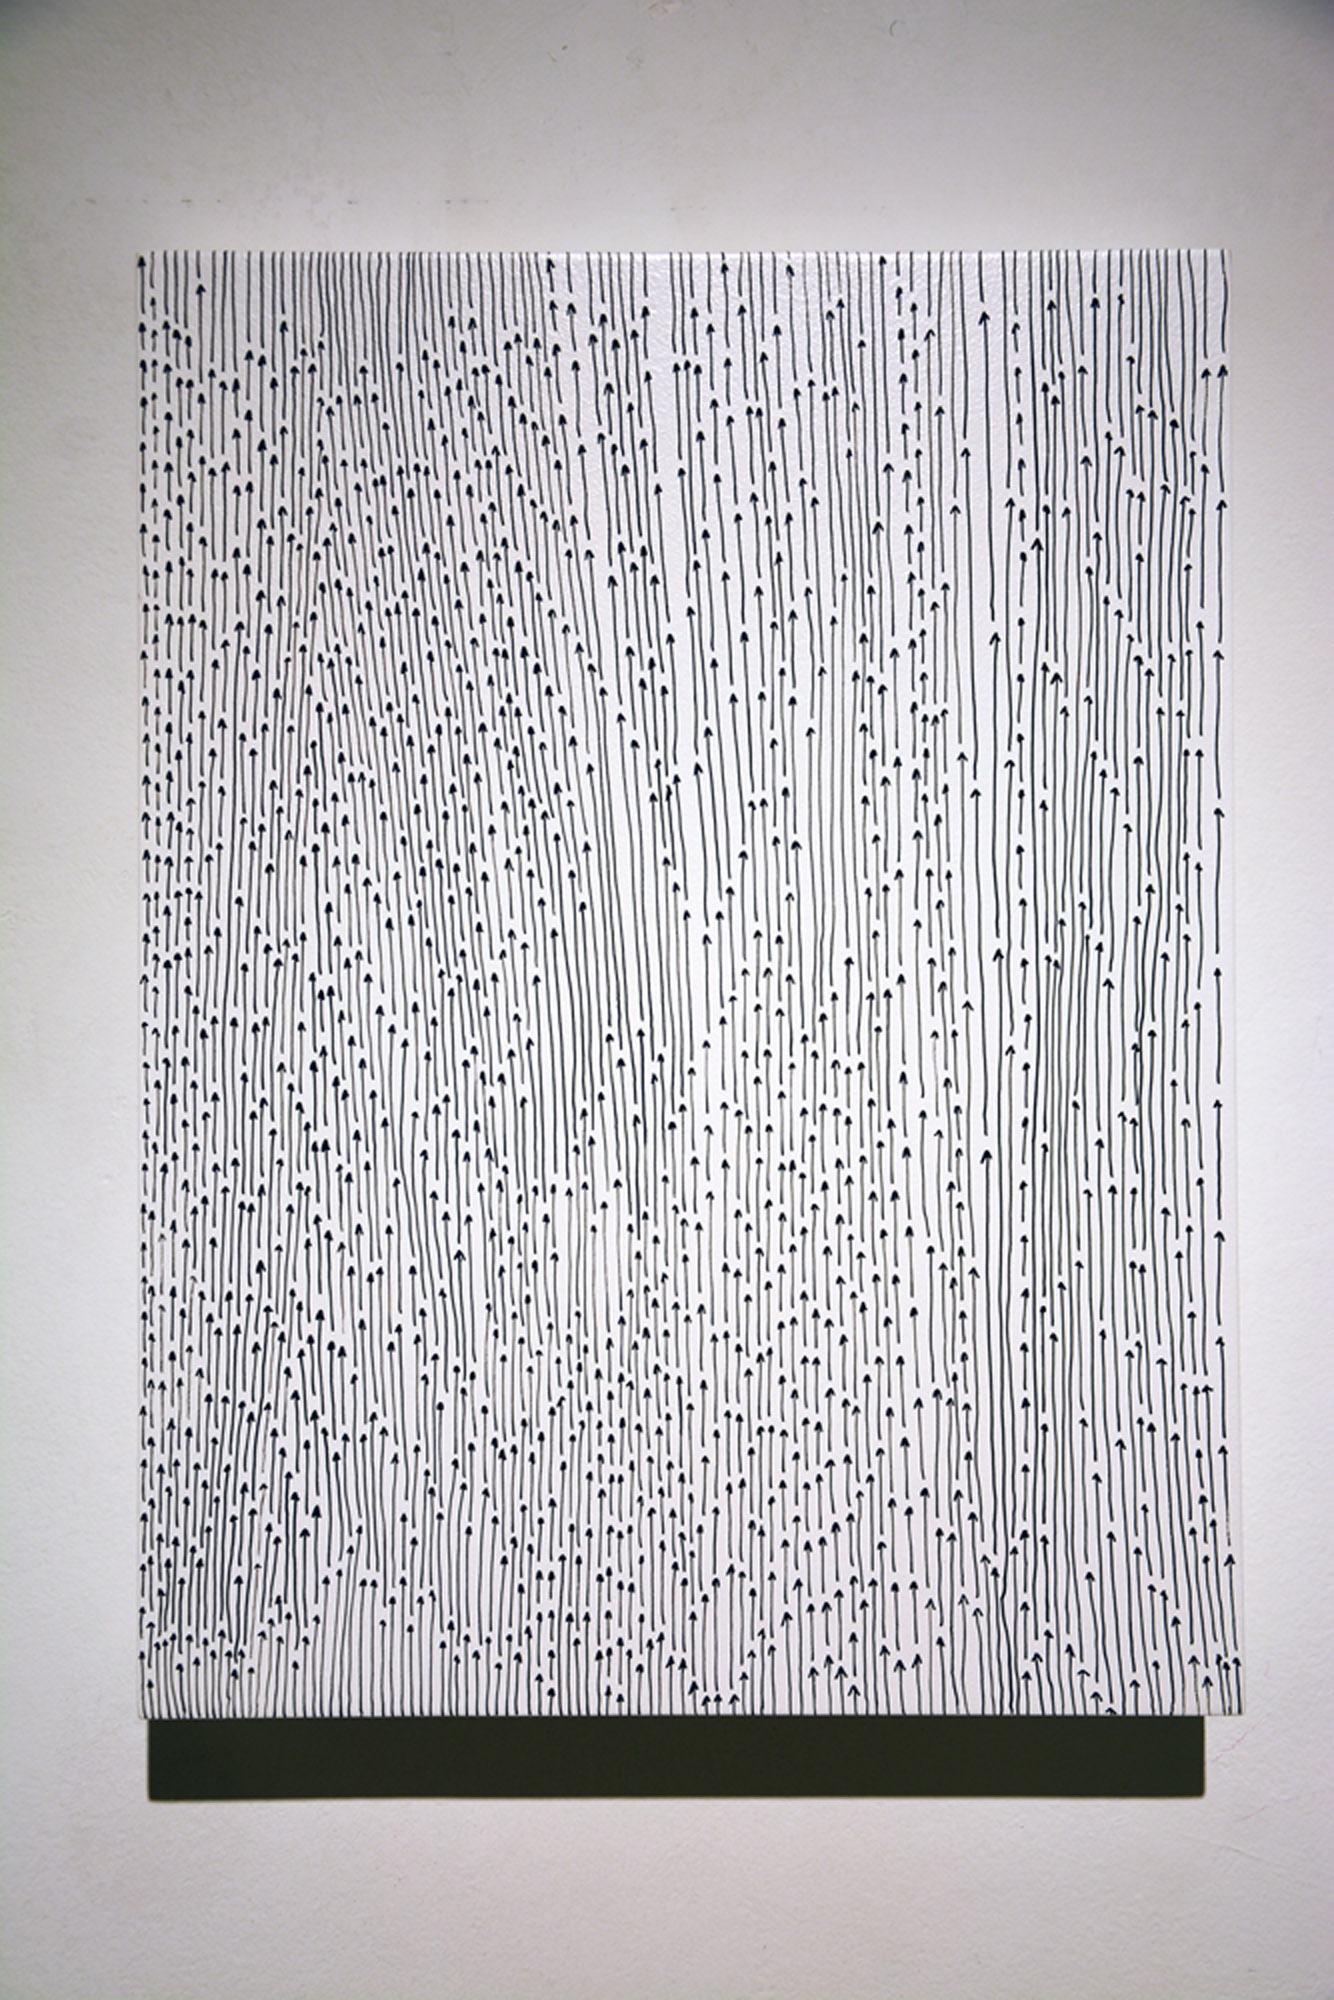 Andrea Bianconi, Paradiso, 2018, inchiostro su tavola, 30x40 cm